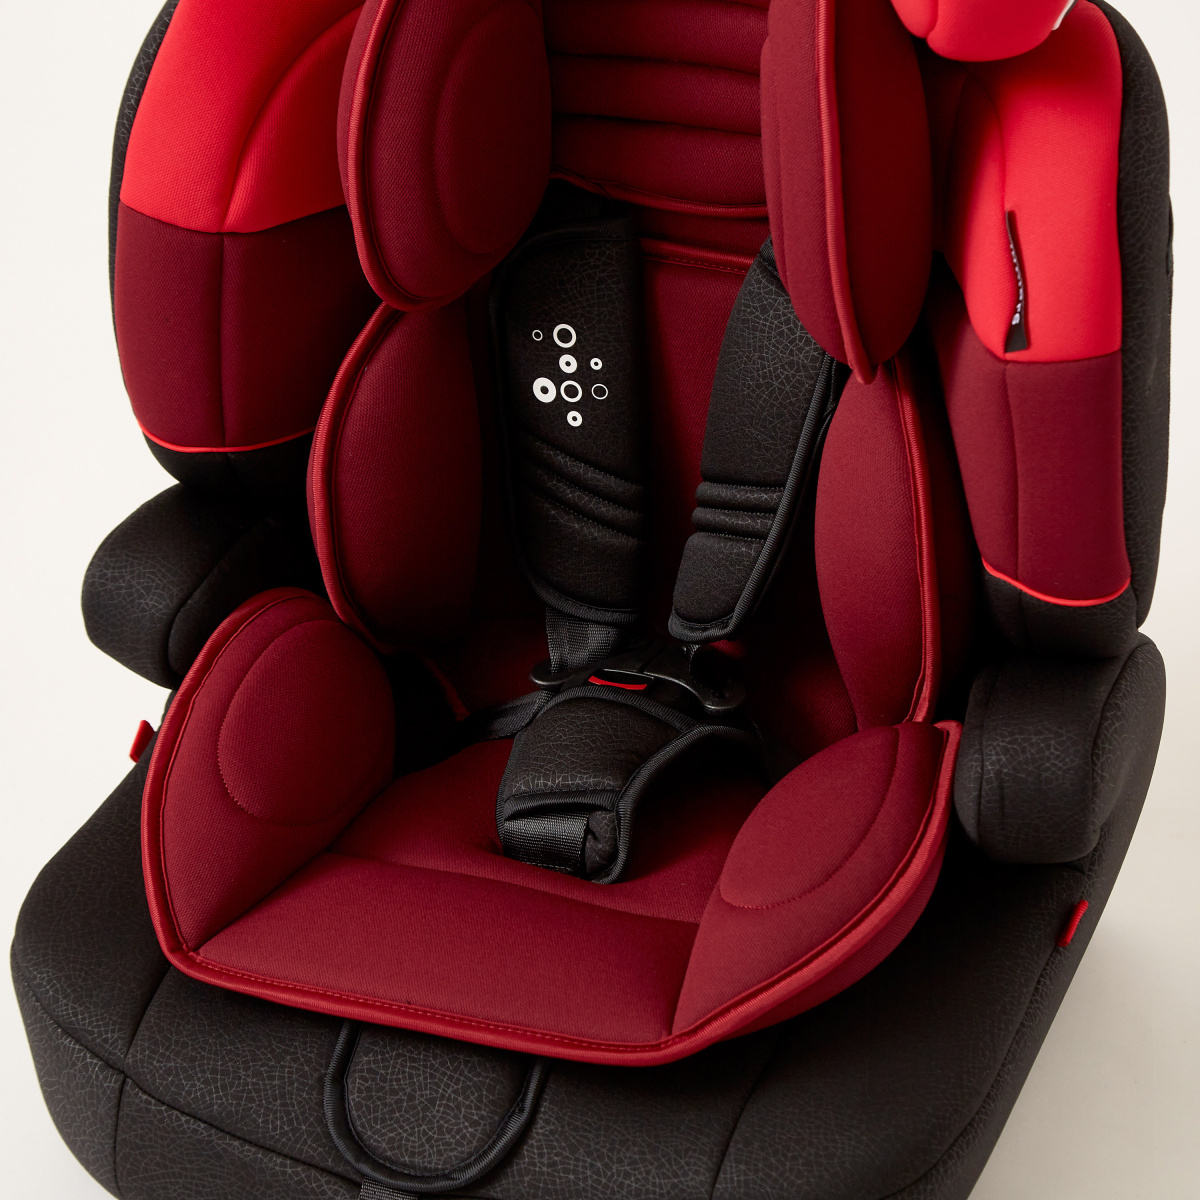 مقعد سيارة للأطفال الأكبر سنًا دومينجو - احمر